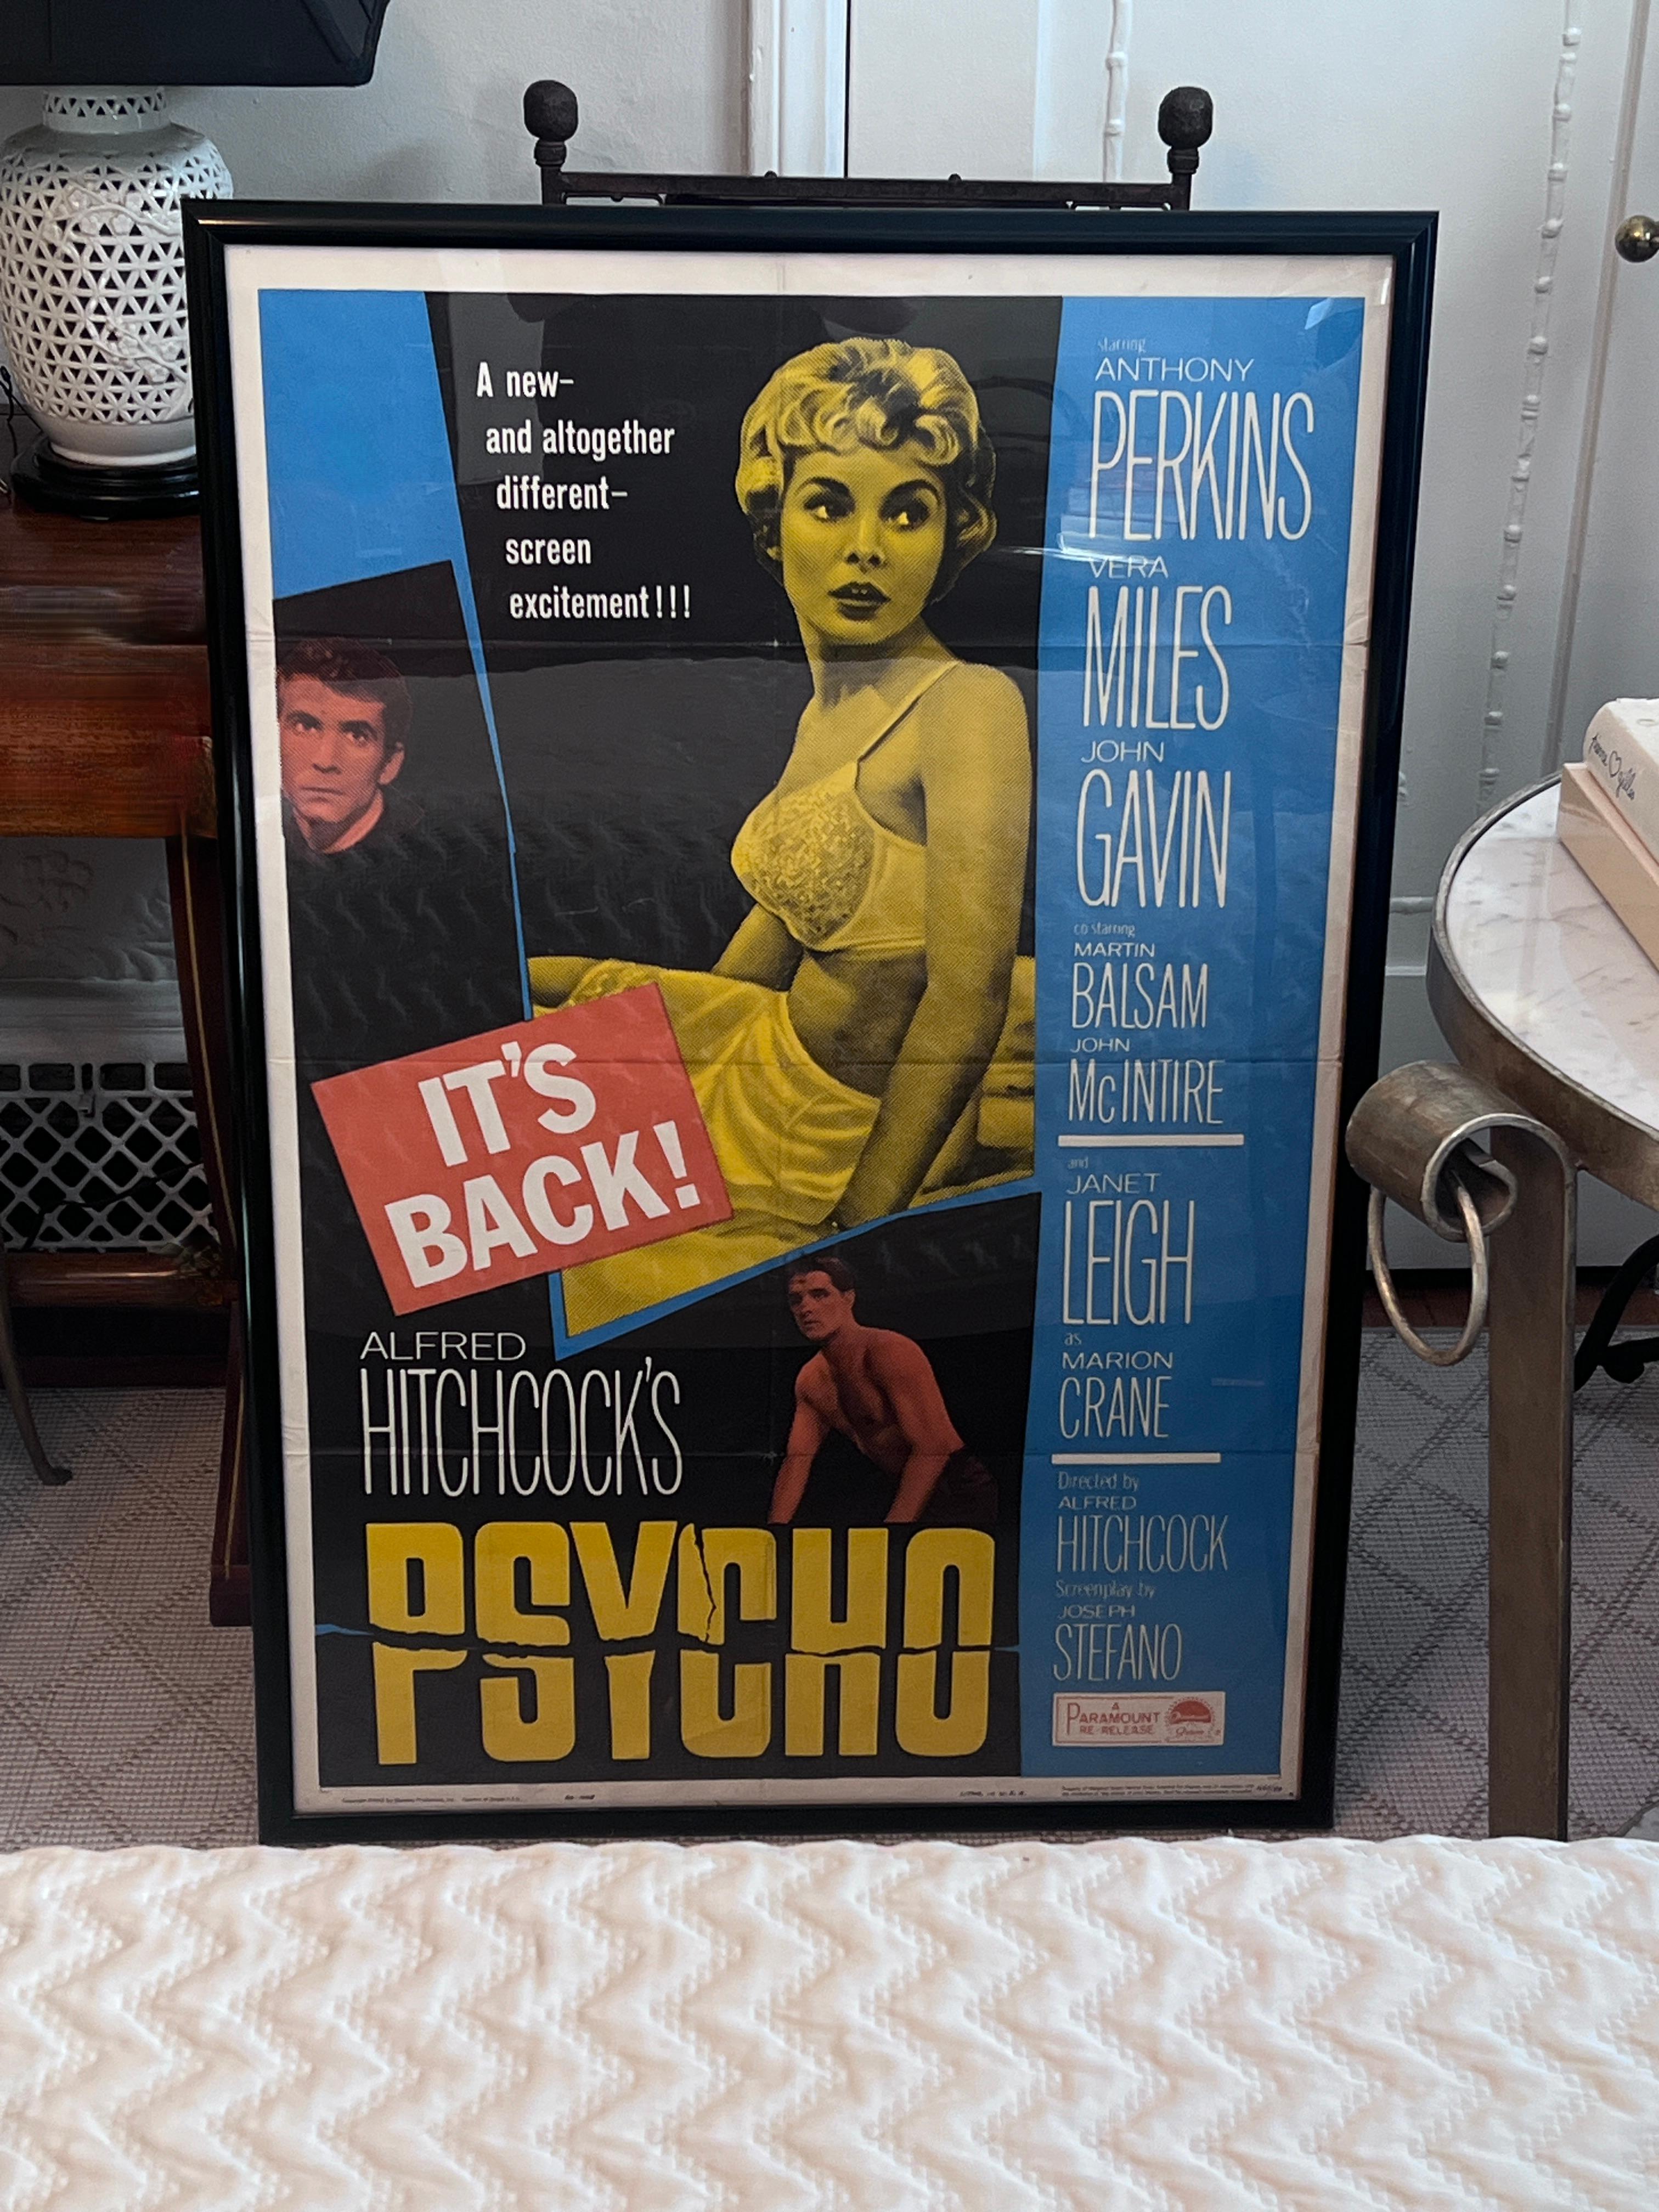 Ein gerahmtes Filmplakat für die Wiederveröffentlichung von Alfred Hitchcocks PSYCHO mit Janet Leigh, Anthony Perkins und Vera Miles in den Hauptrollen.

Das Plakat wurde an einer Stelle gefaltet, und einige Falten sind sichtbar (wir denken, dass